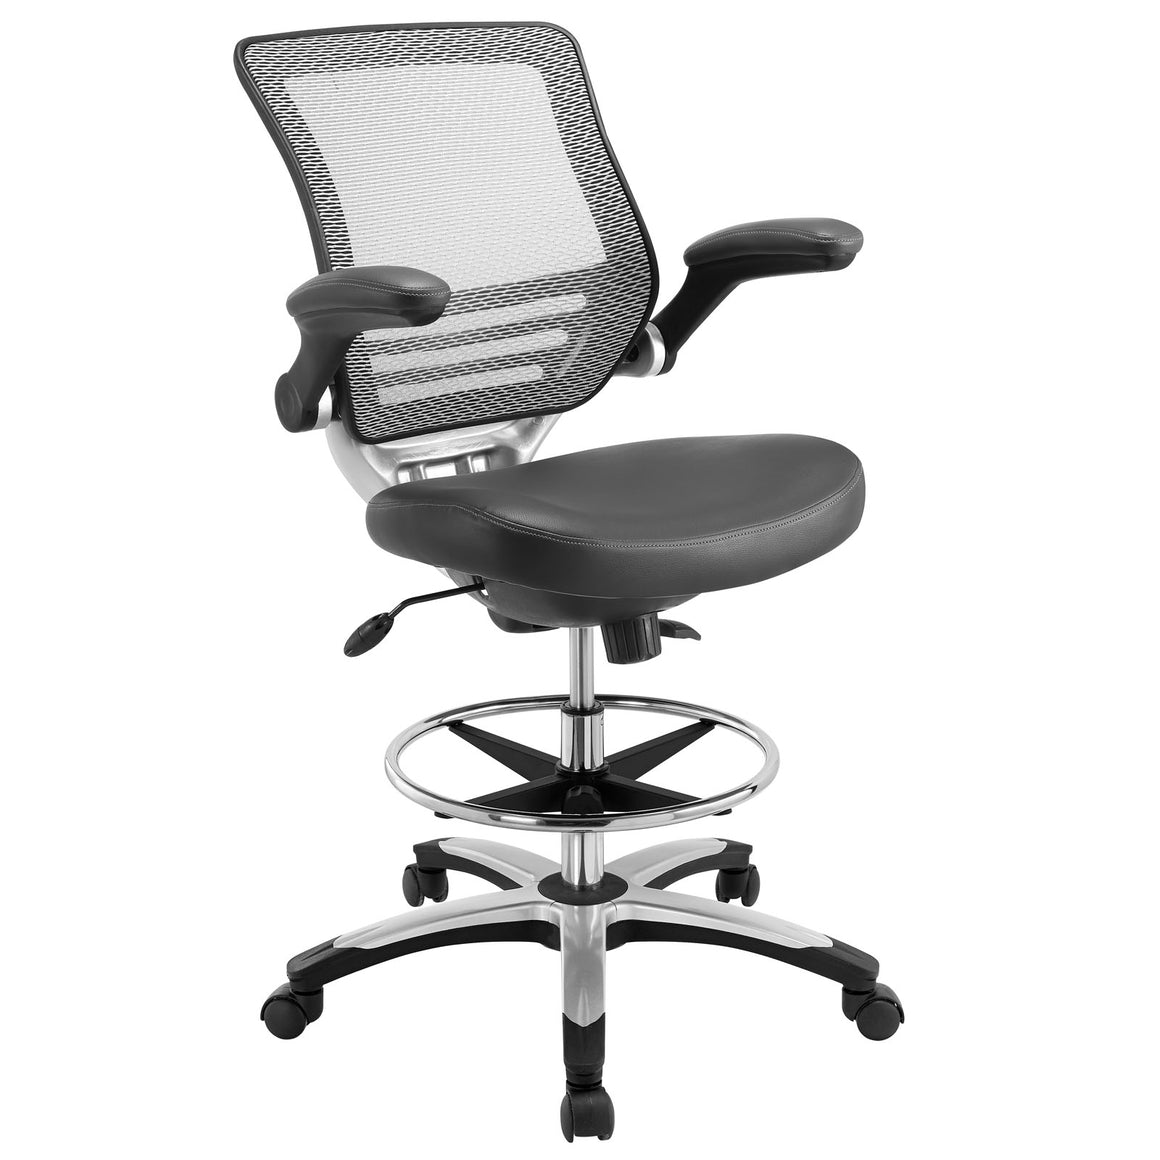 Модель офисного кресла. Офисное кресло Stool Group Кларк. Офисное кресло КДК кресло "Grand" (a-9821). Кресло офисное на газпатроне. Офисное кресло с-5-2 HB Charti.